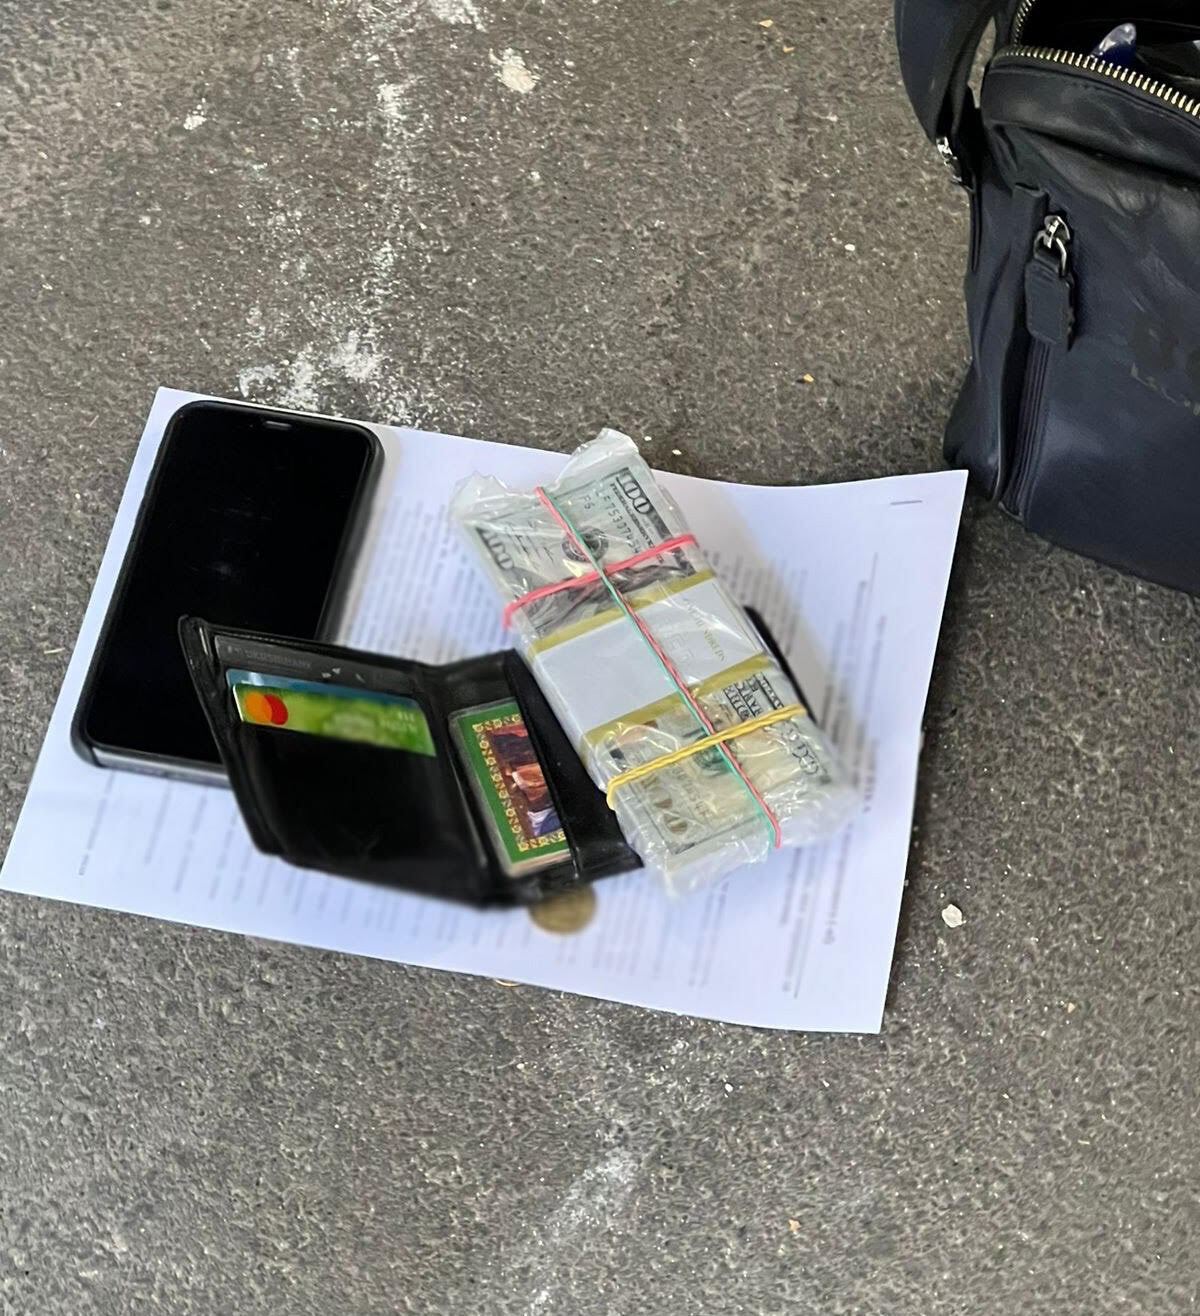 В Киеве разоблачили адвоката, который подстрекал мужчину дать $10 тыс. взятки судье. Фото и подробности